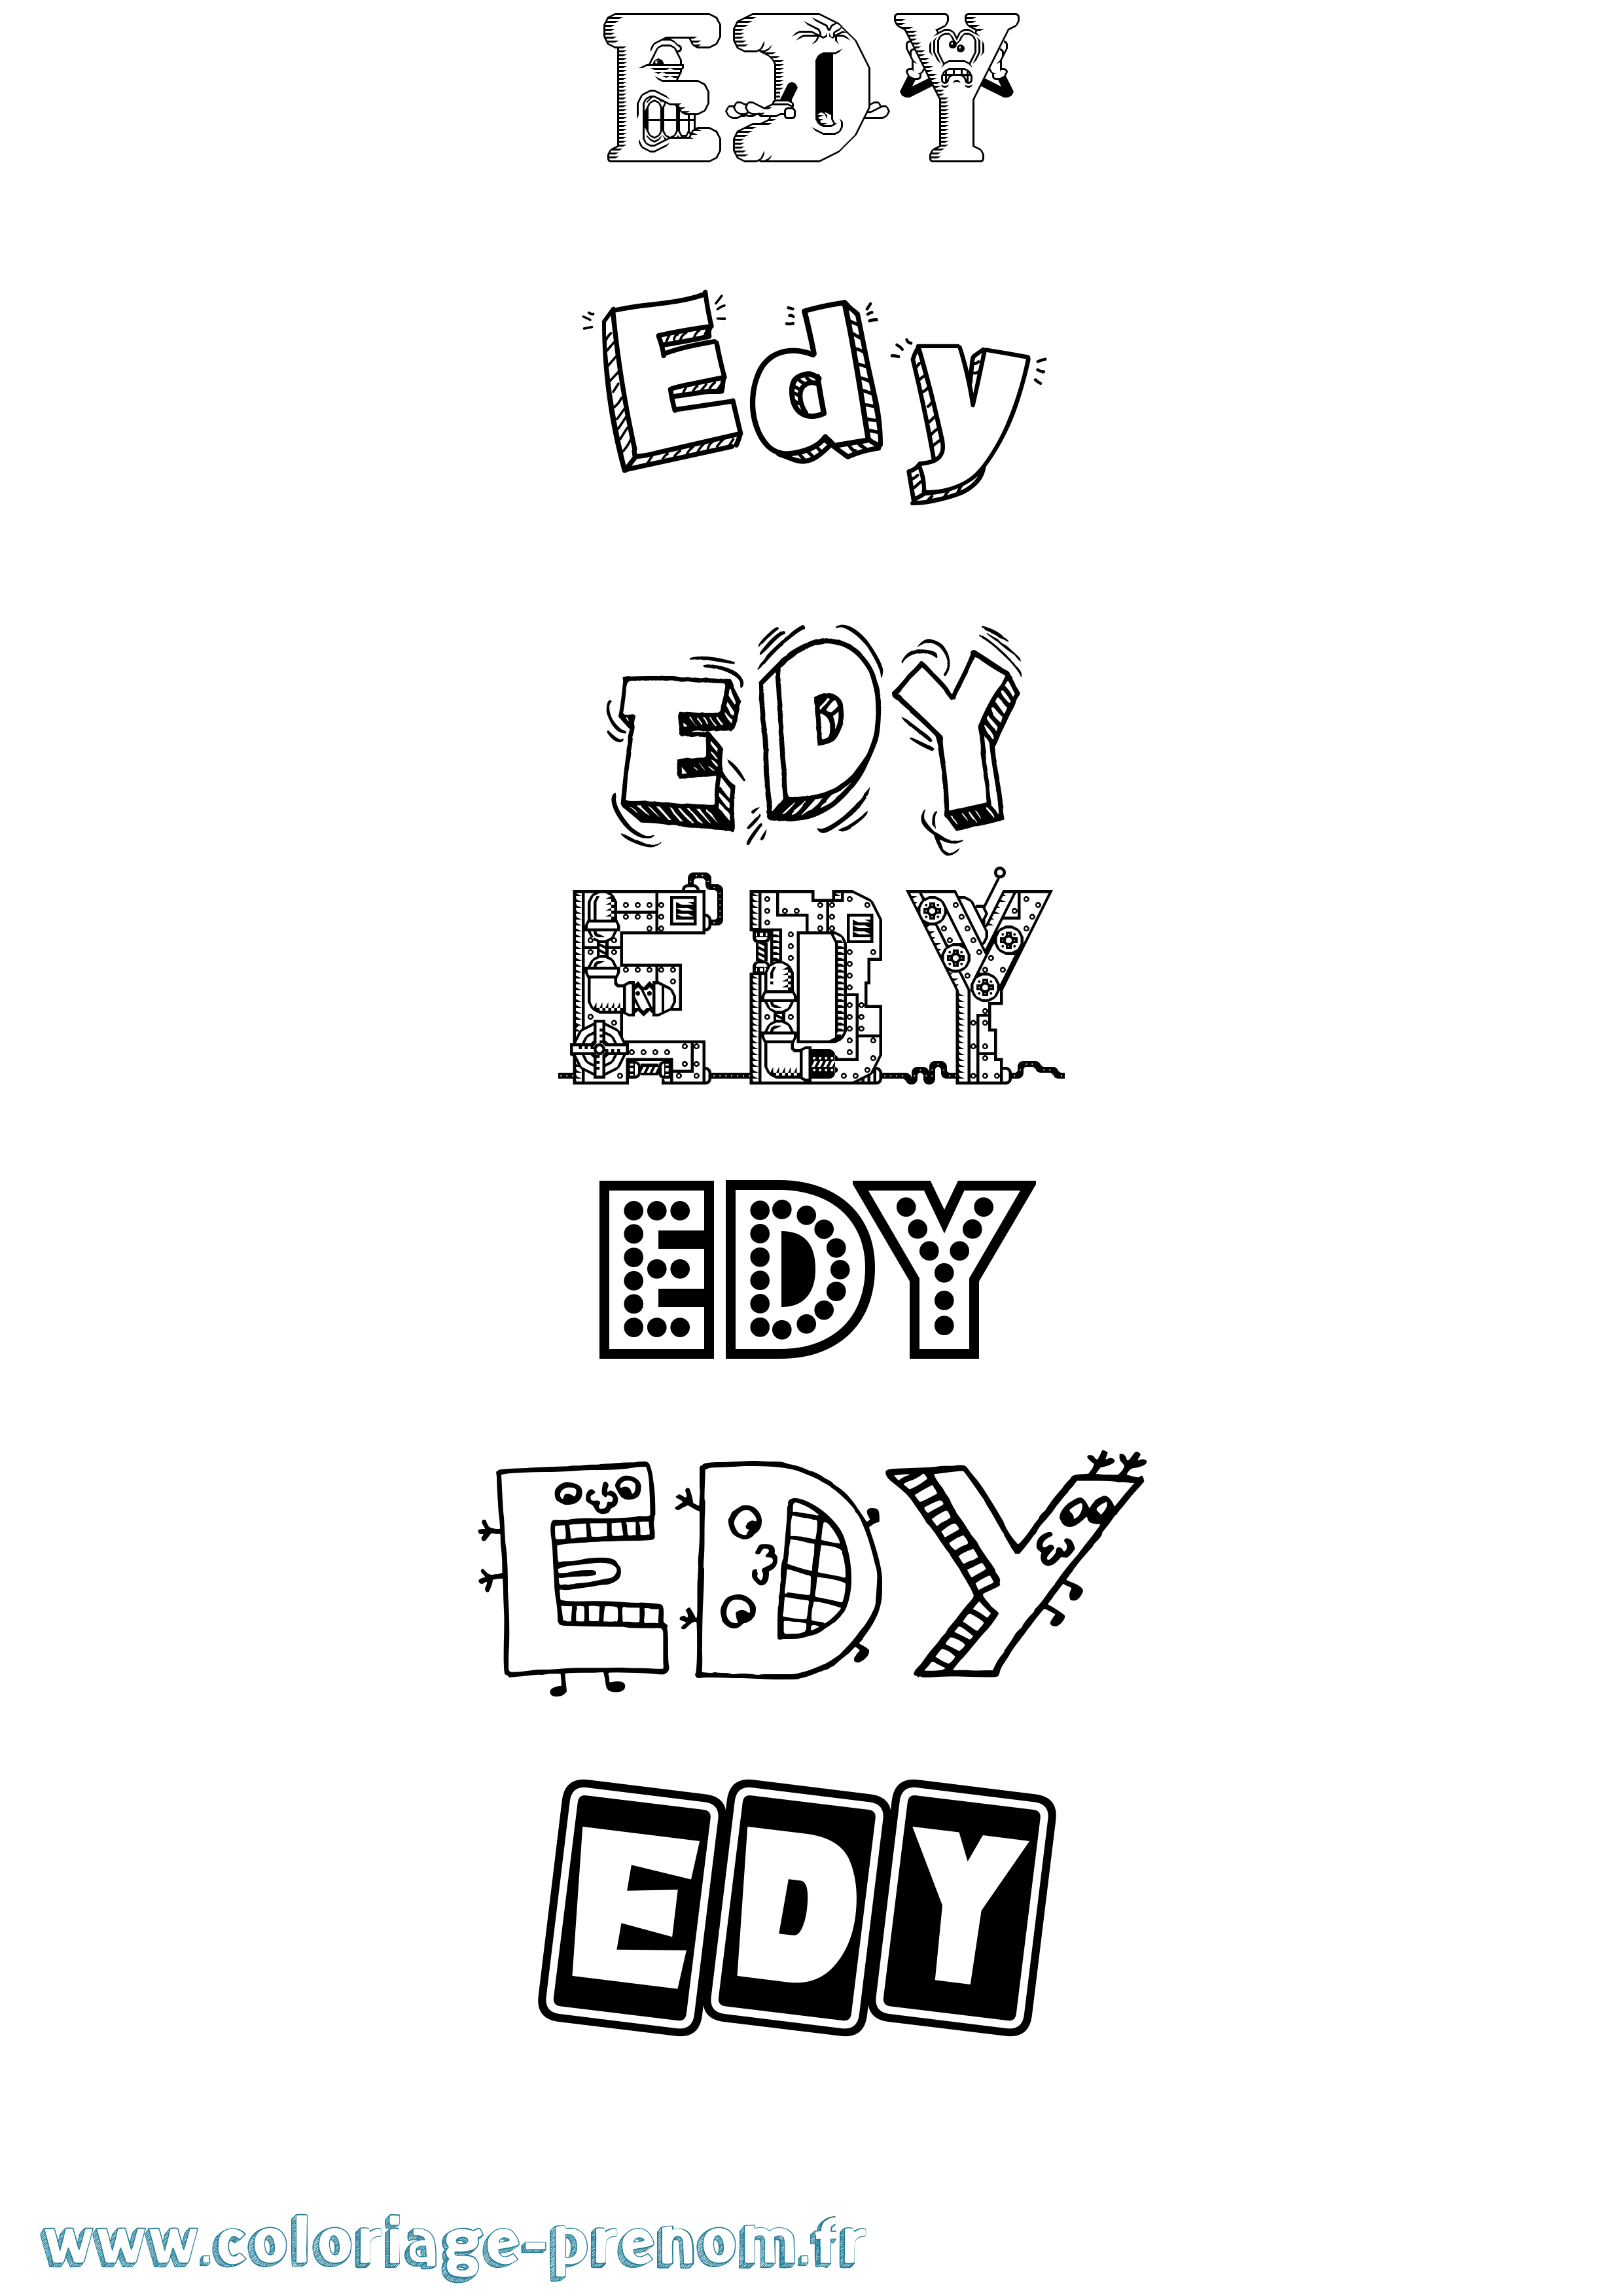 Coloriage prénom Edy Fun